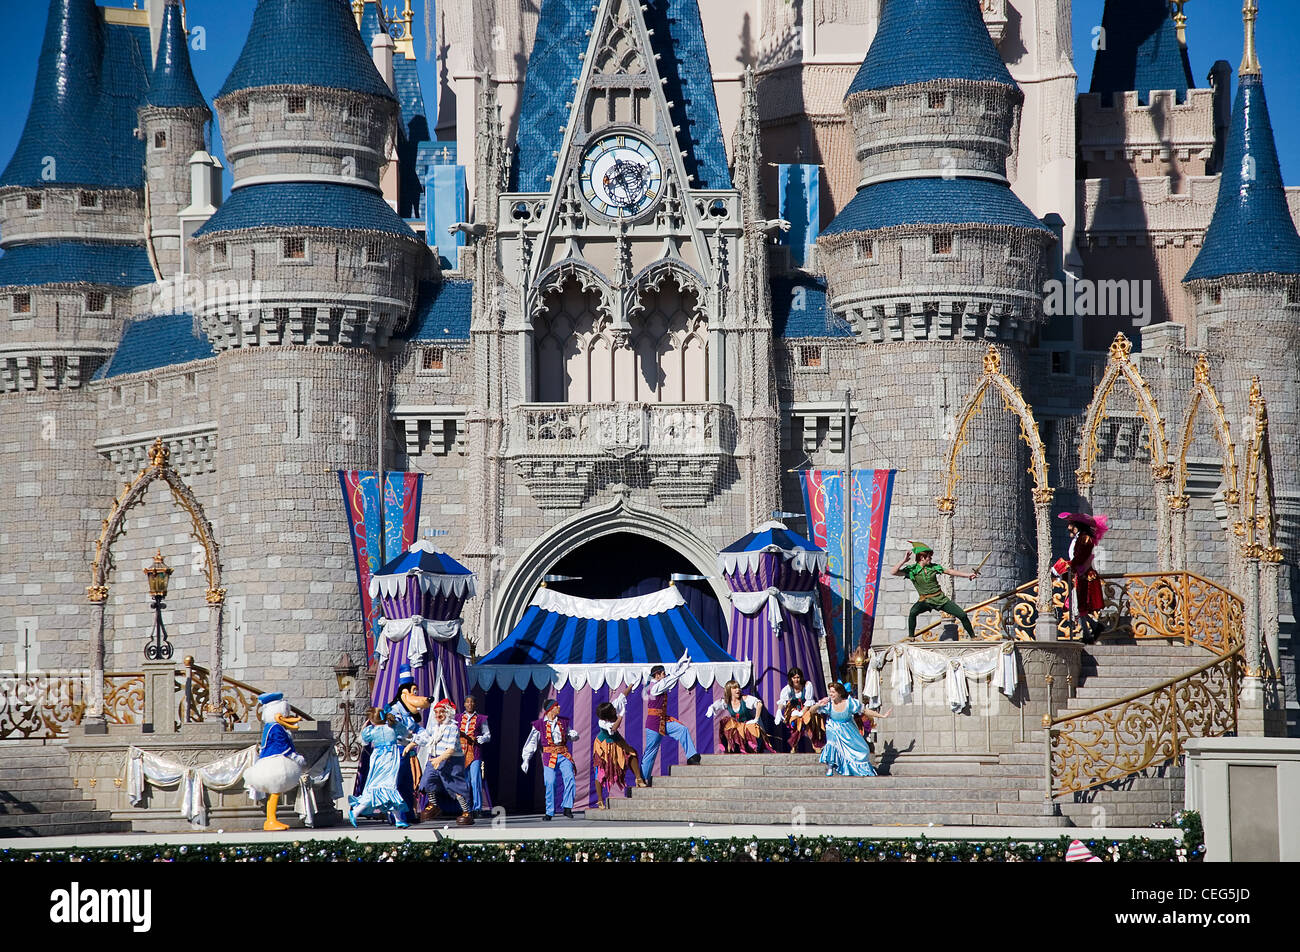 An open space show, Disneyworld, Orlando, Florida, USA Stock Photo